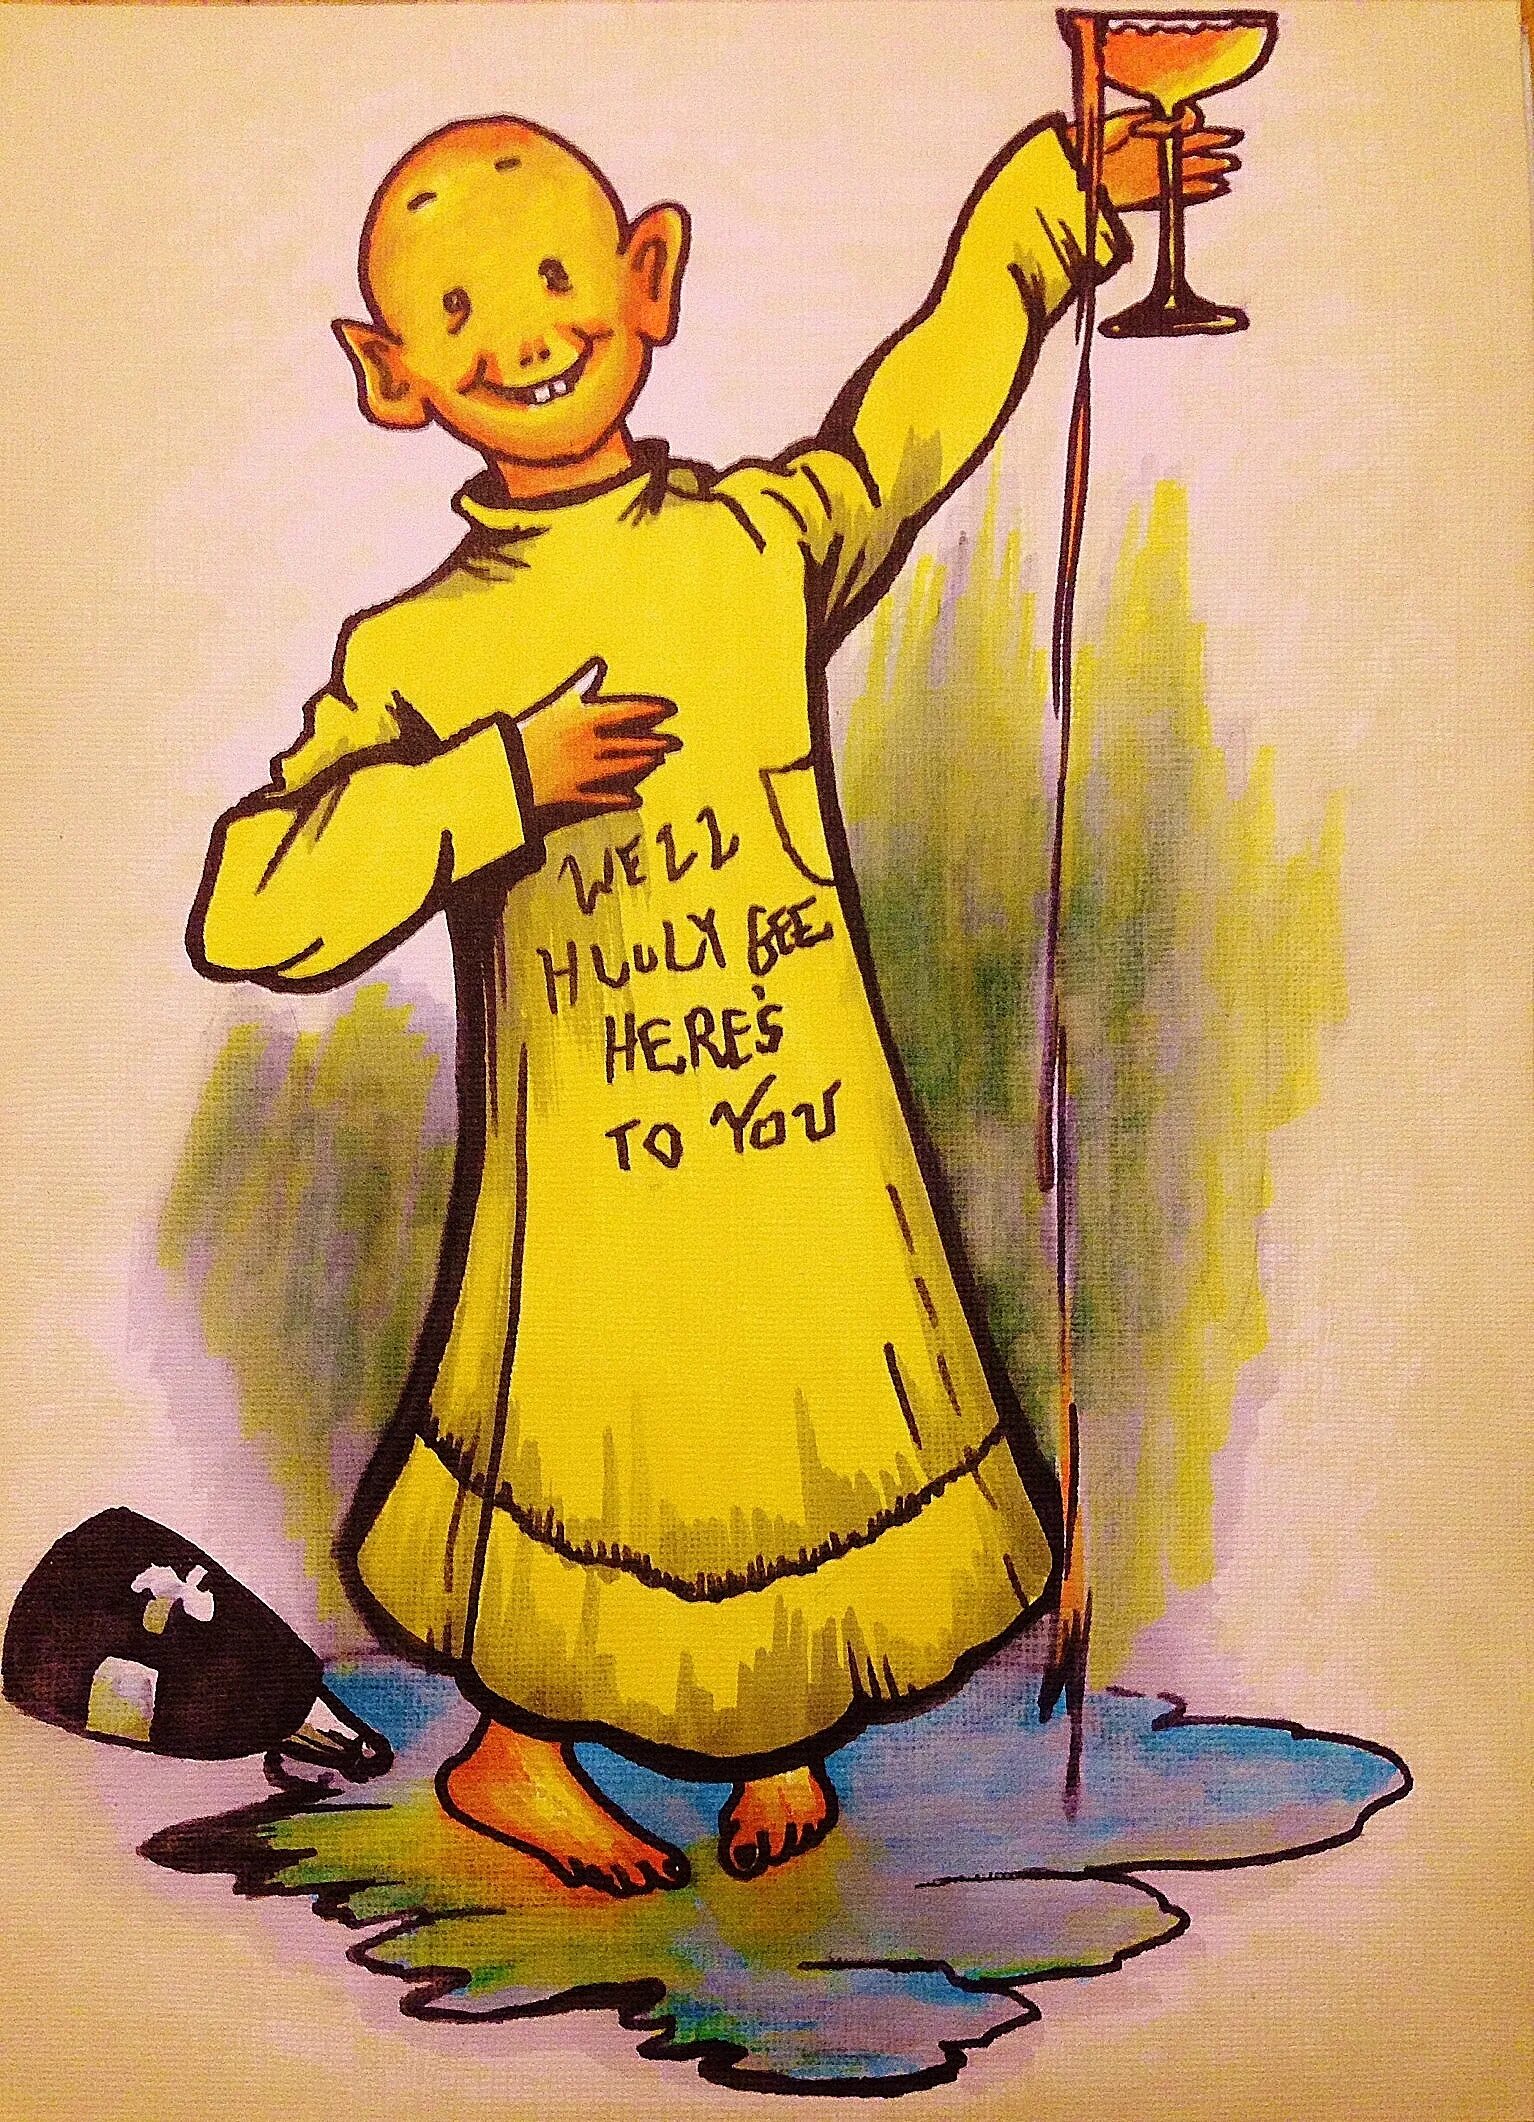 Желтый малыш. Ричард Аутколт. Ричард Аутколт желтый малыш. Желтый малыш комикс. Ребенок в желтом арт.